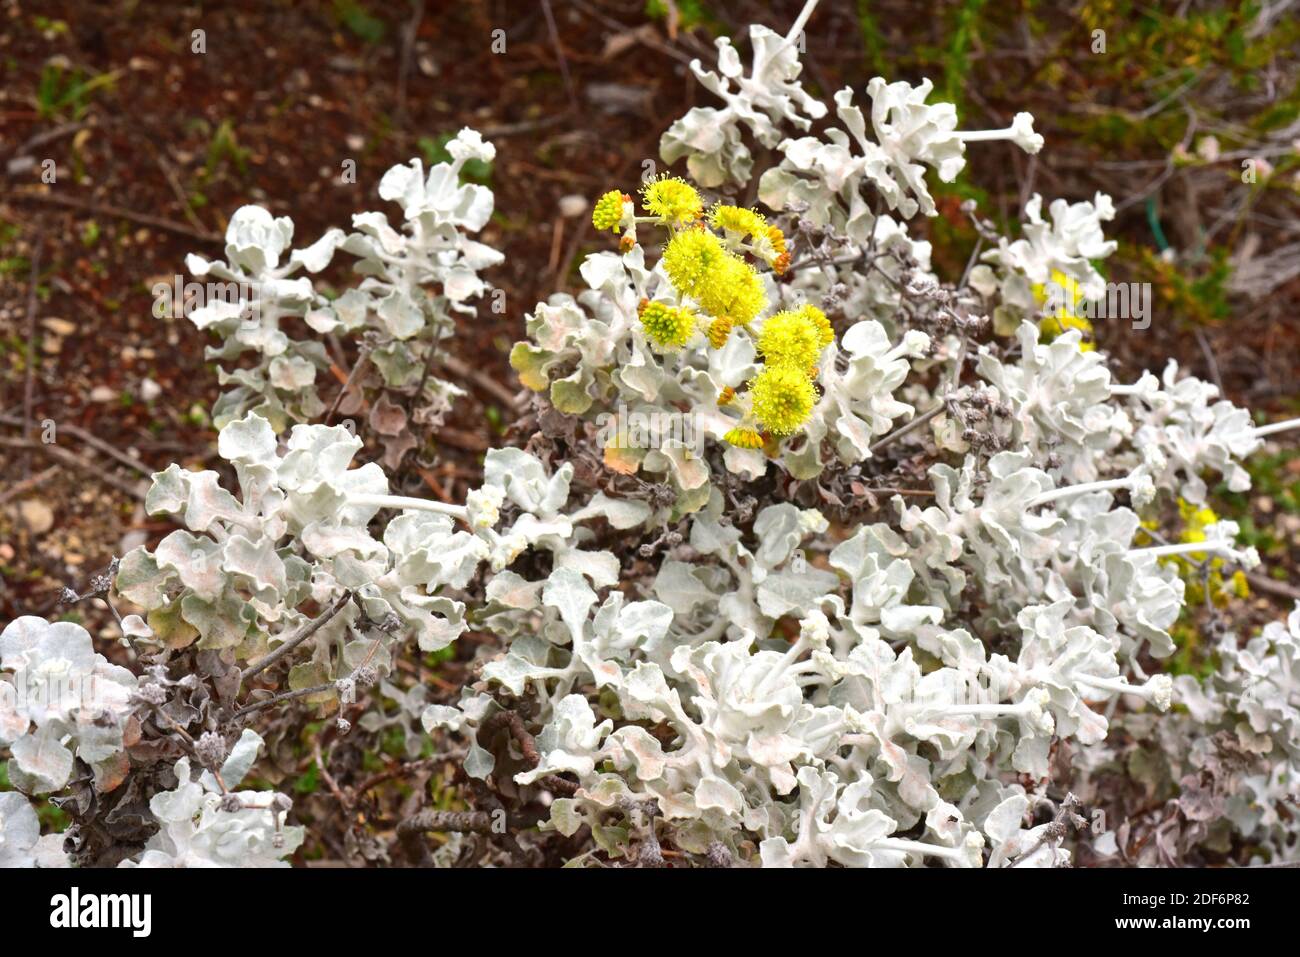 Le sarrasin de Conejo ou sarrasin de safran ( Eriogonum crocatum) est un arbuste endémique de la vallée de Conejo, en Californie. Banque D'Images